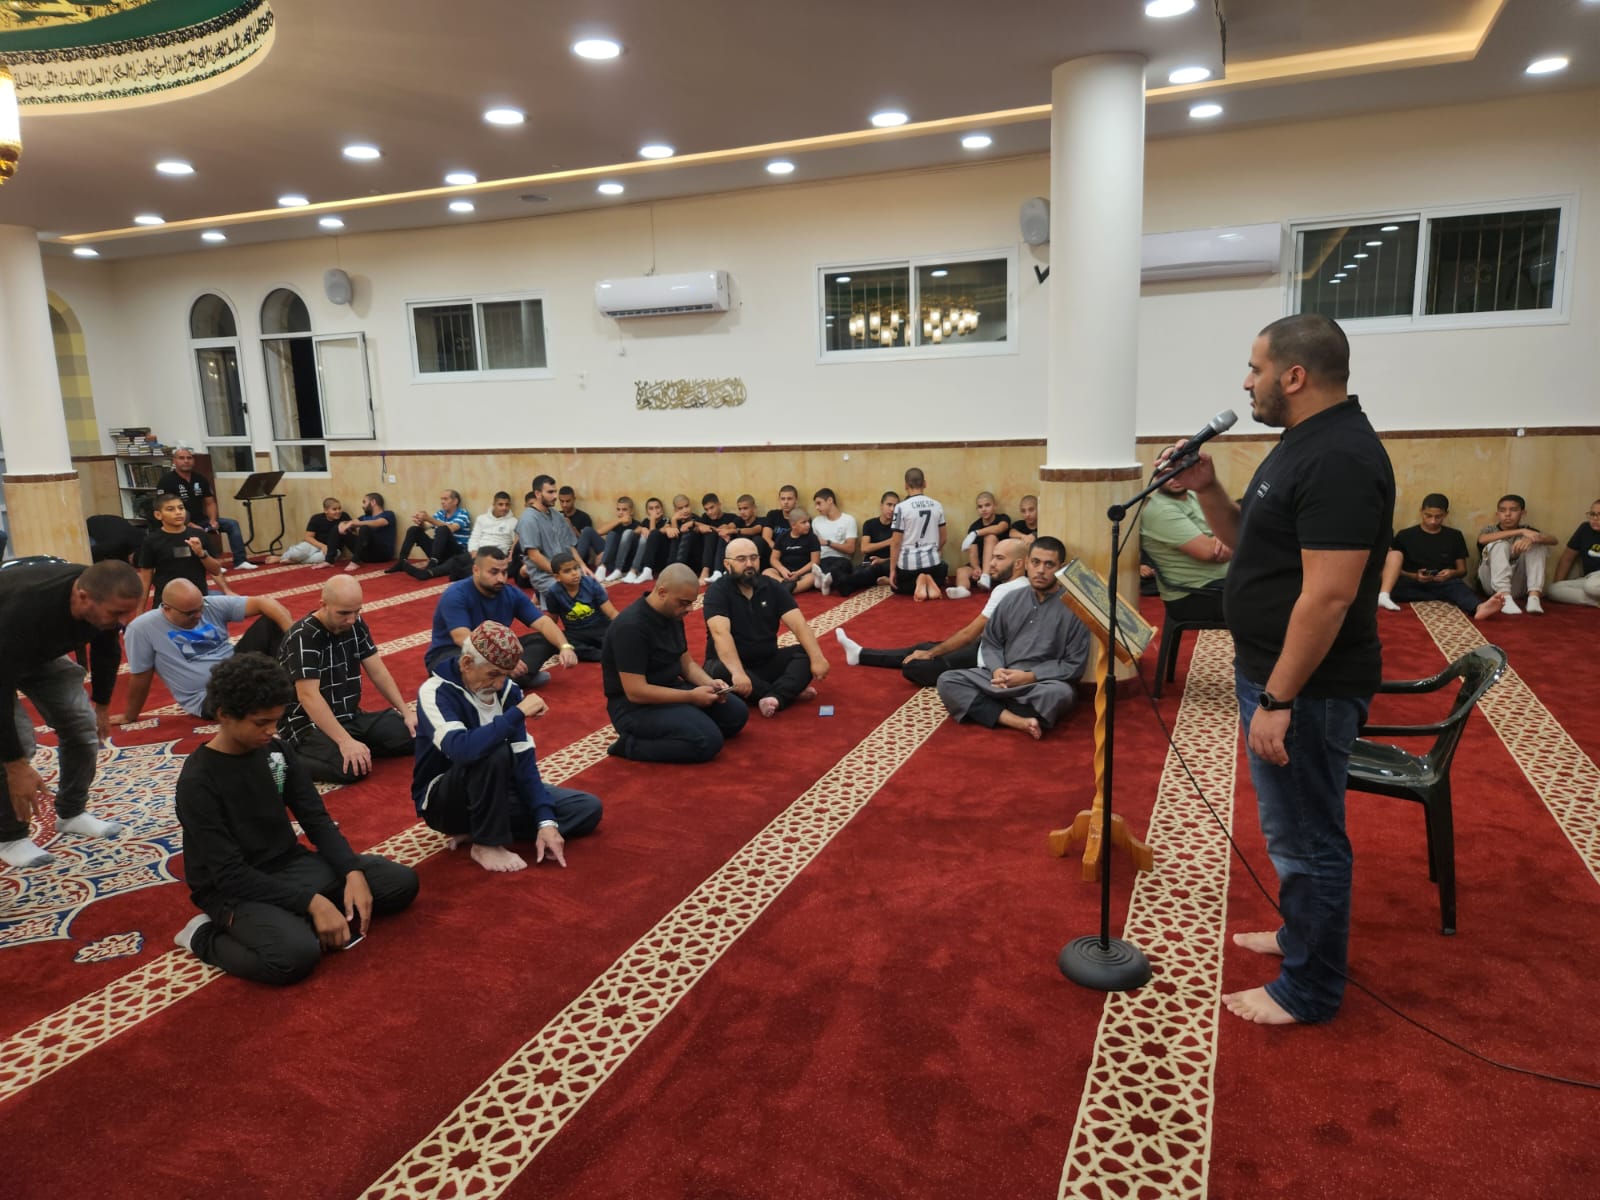 يافا: بالصور الأمسية الأسبوعية (مجالس النور ) في مسجد العجمي